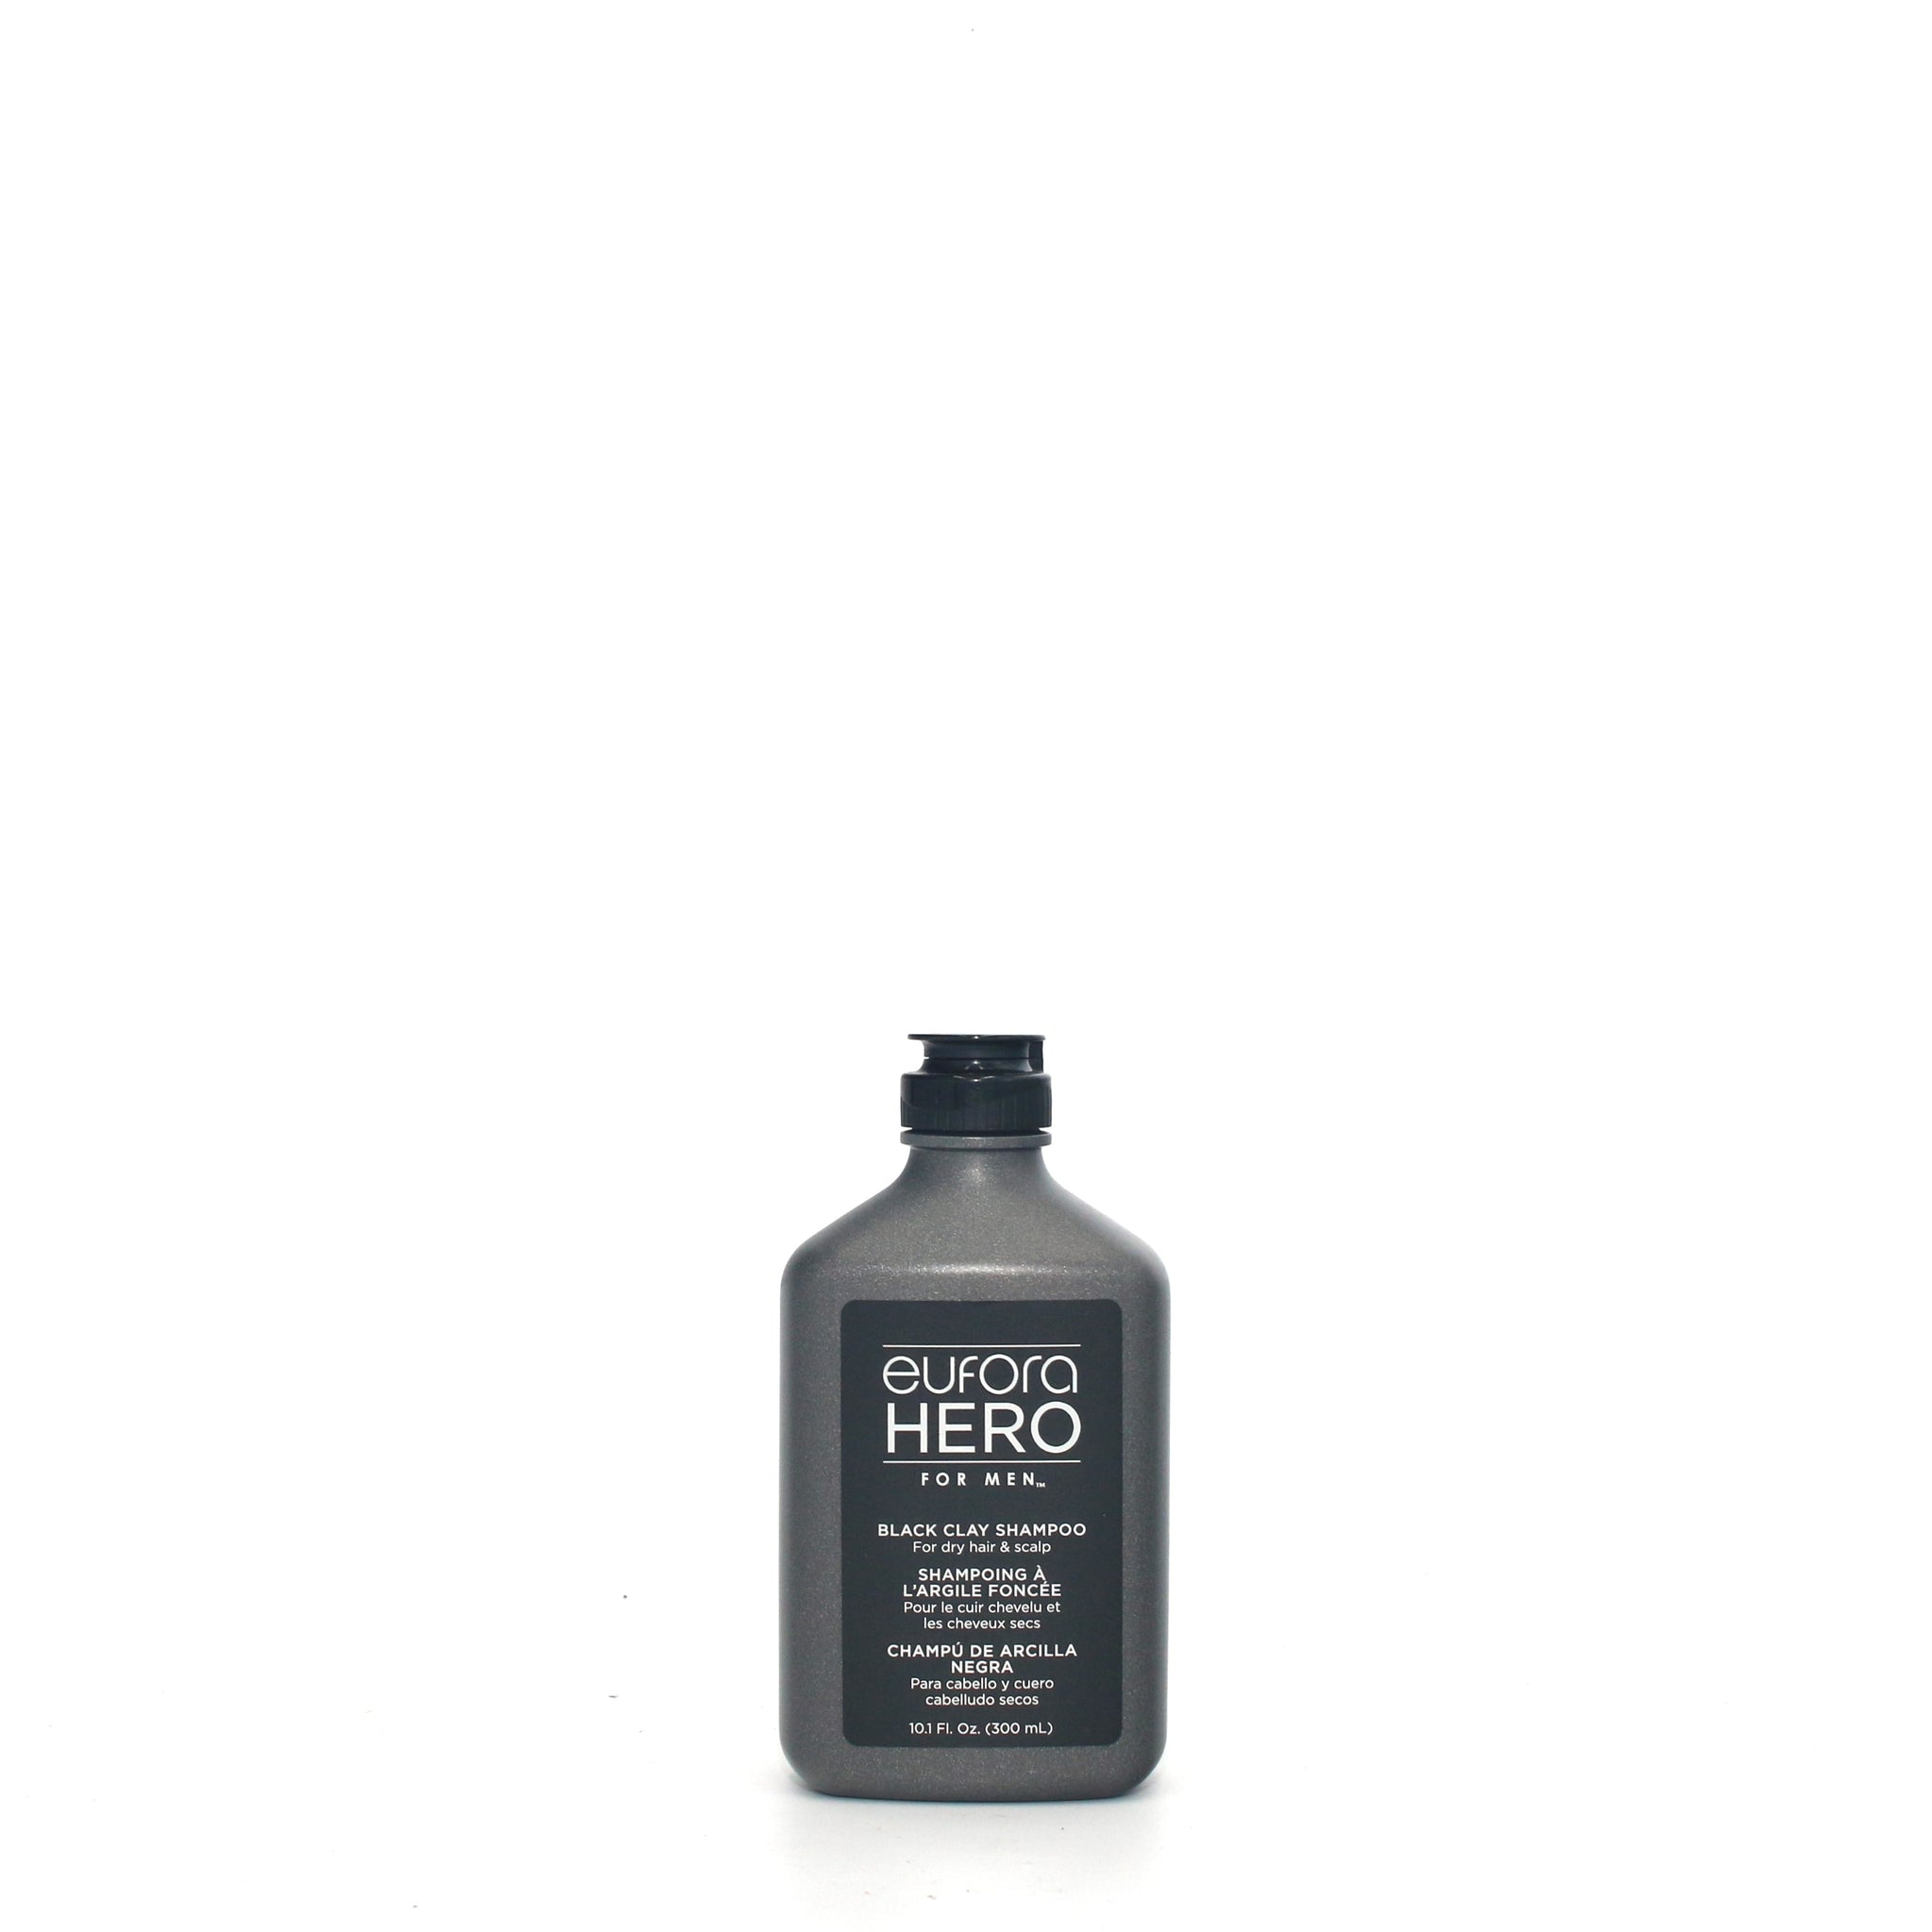 EUFORA Hero for Men Black Clay Shampoo 10.1 oz